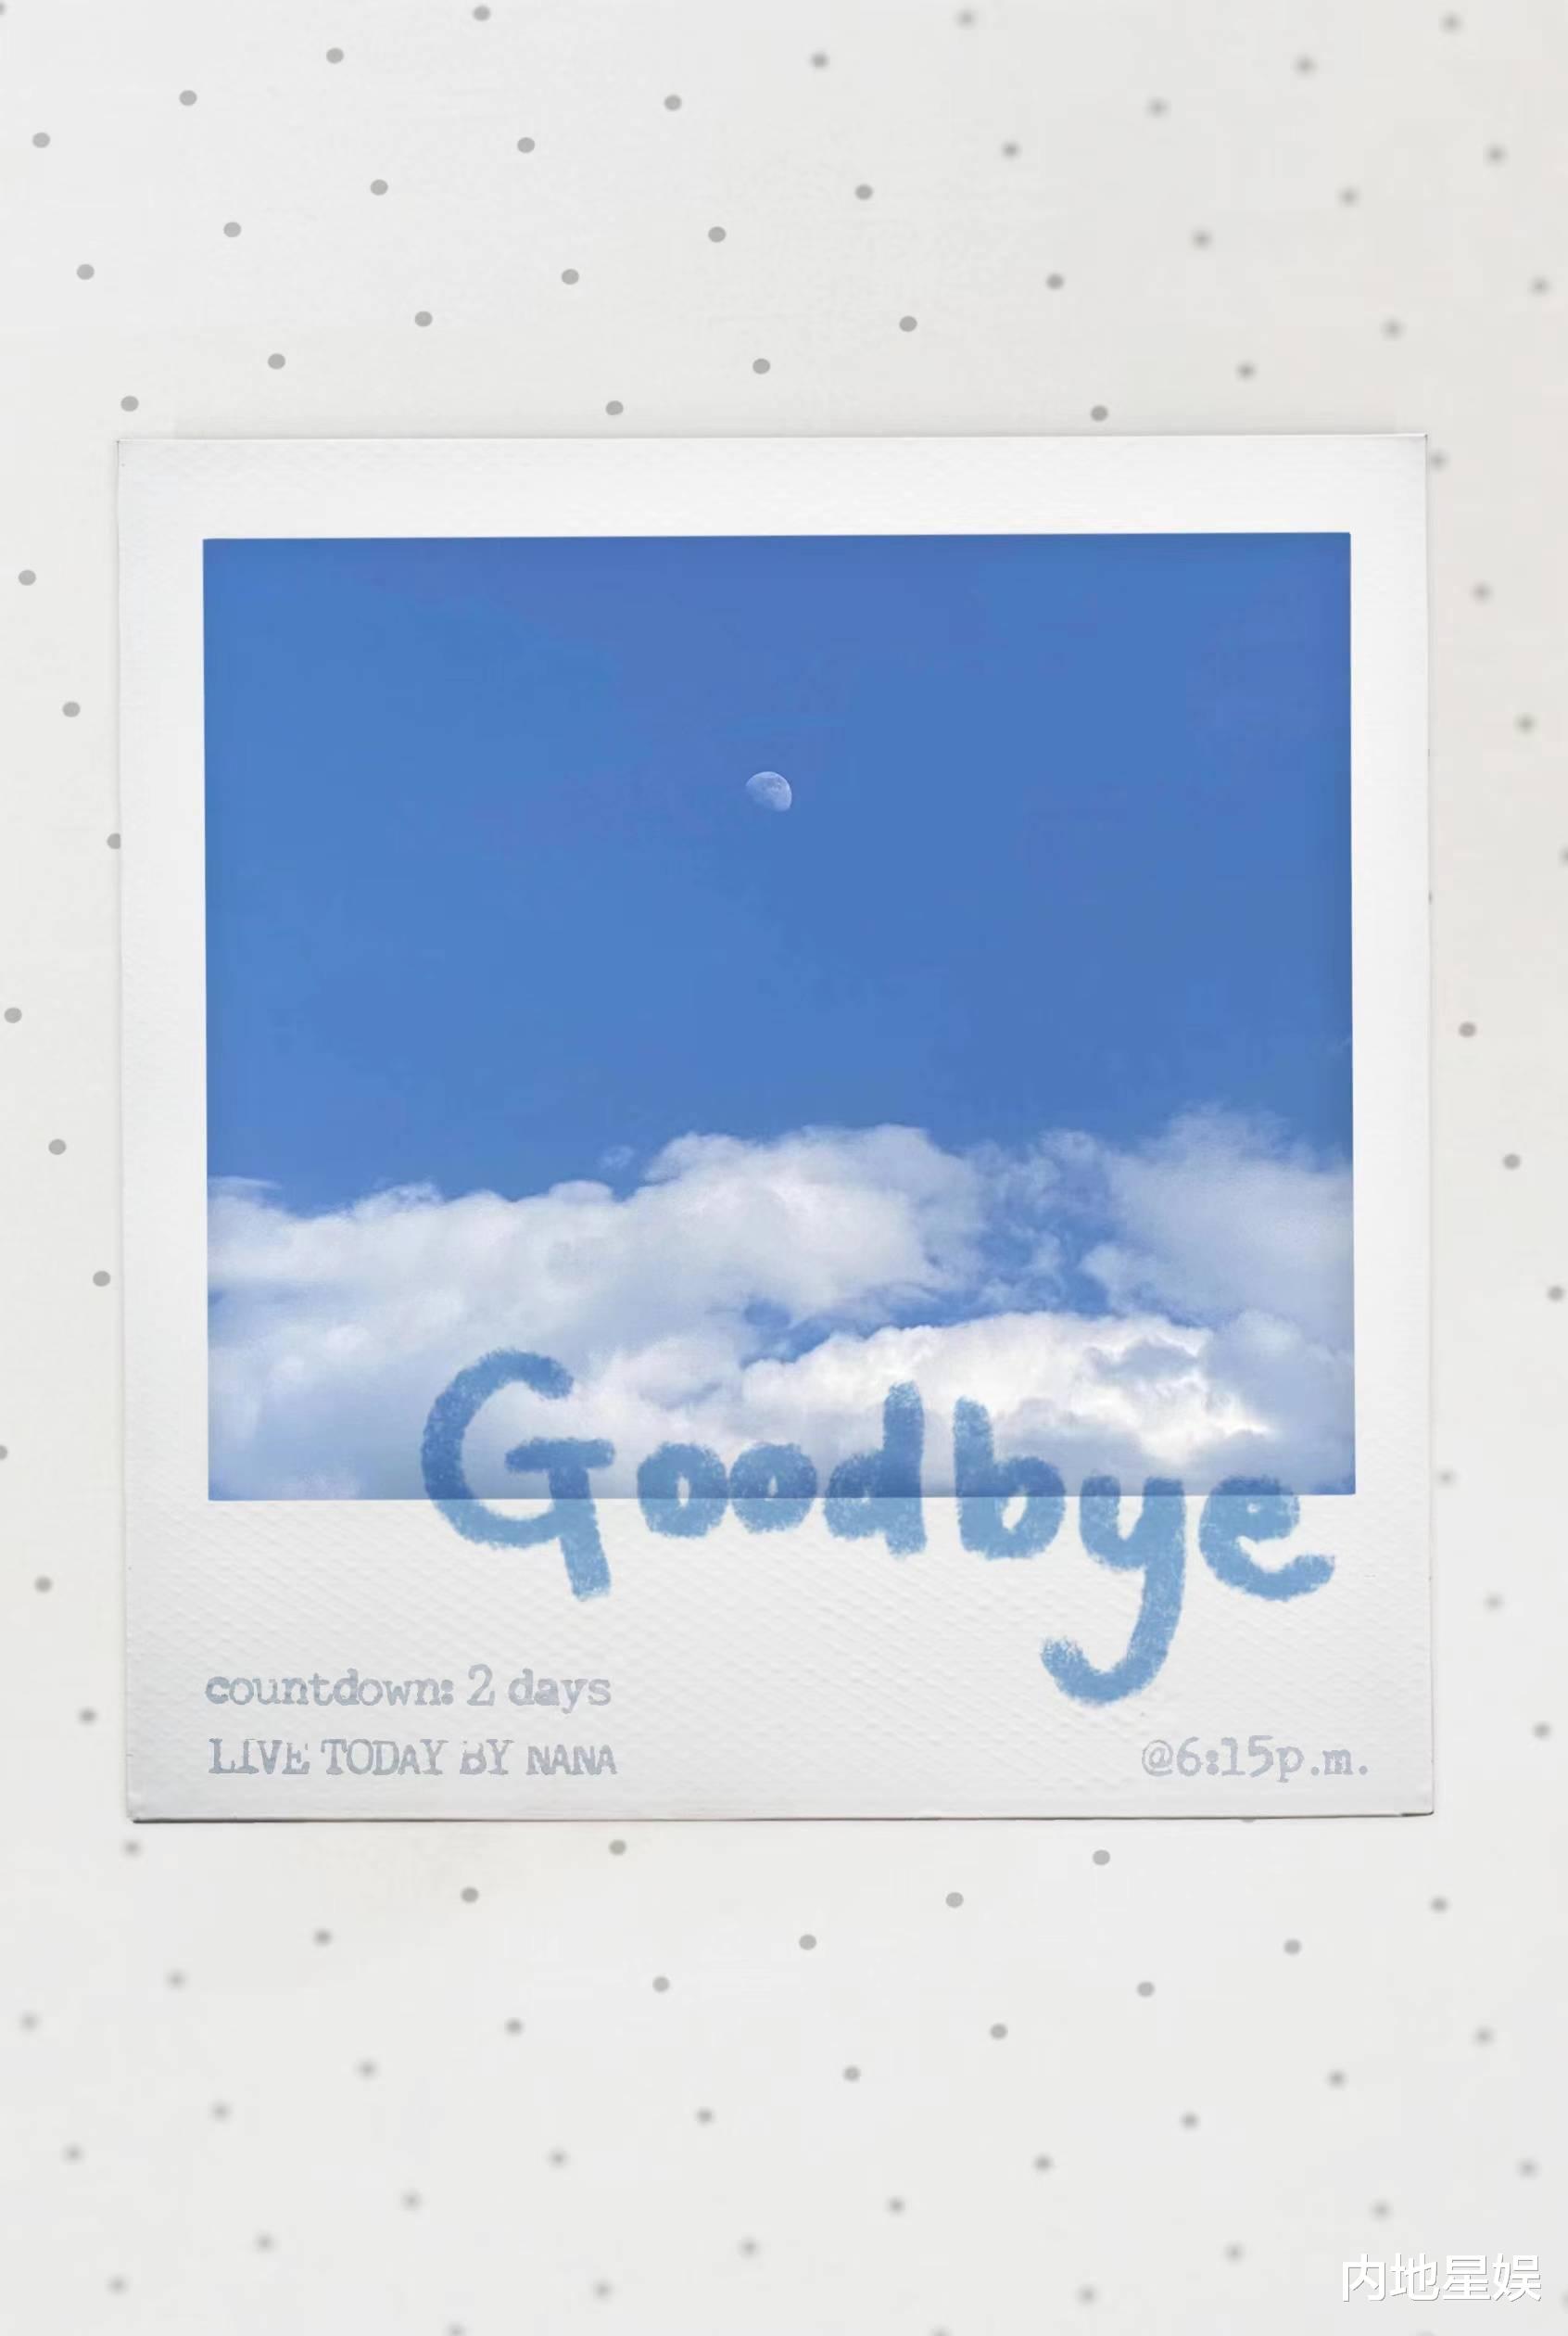 欧阳娜娜原创专辑首支单曲《Goodbye》上线 透过音乐展现多面自我